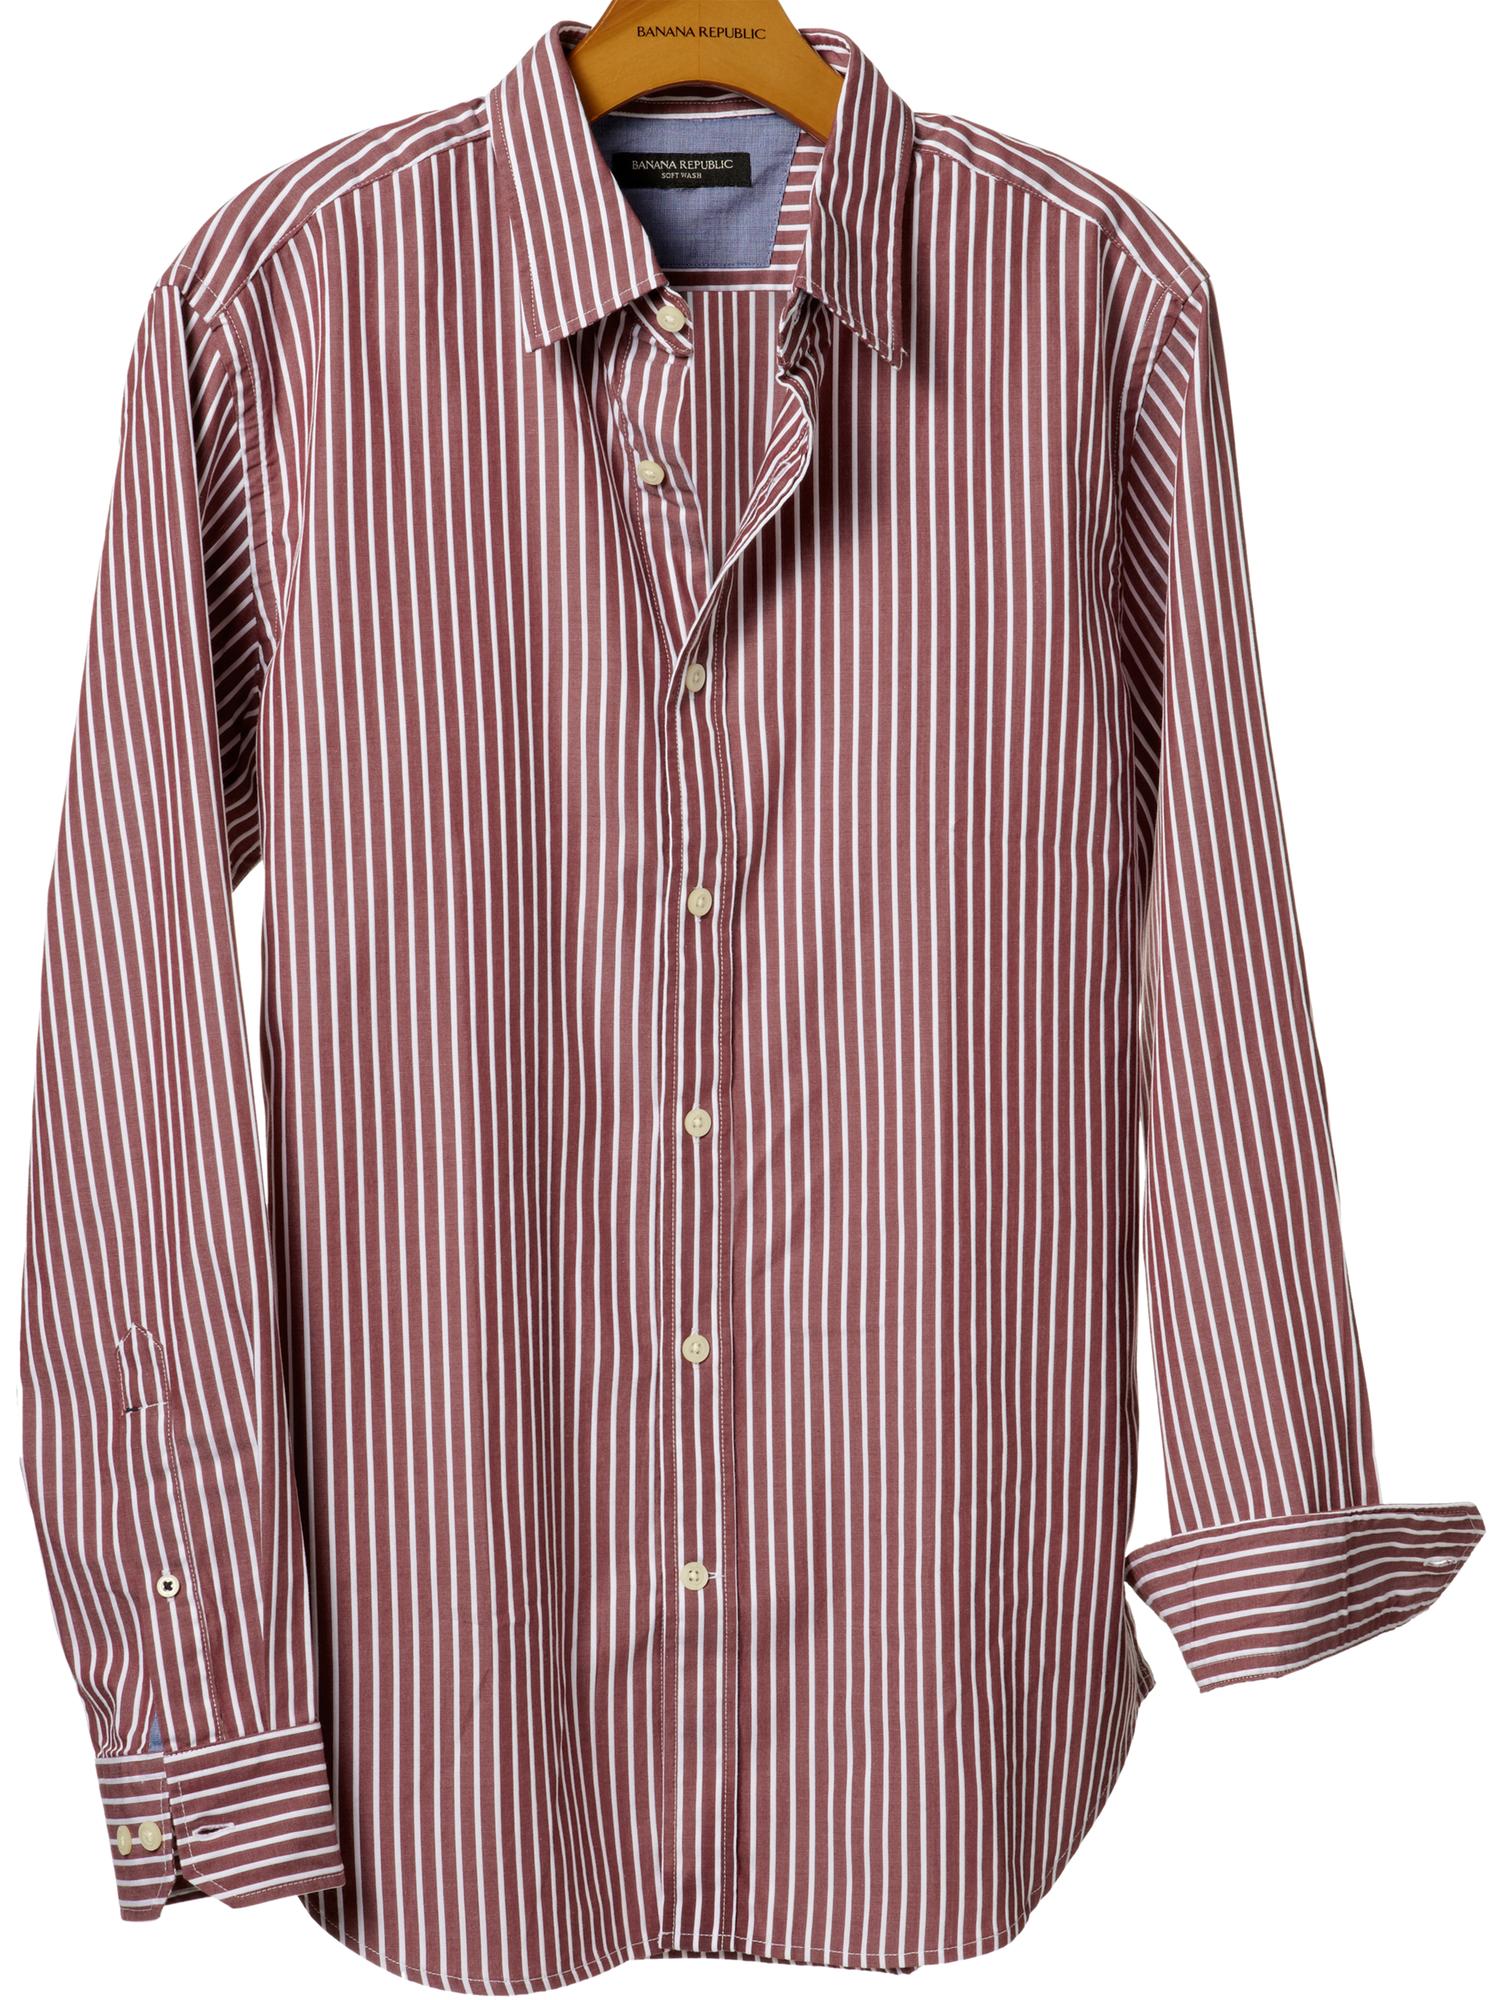 Soft-wash dobby stripe shirt